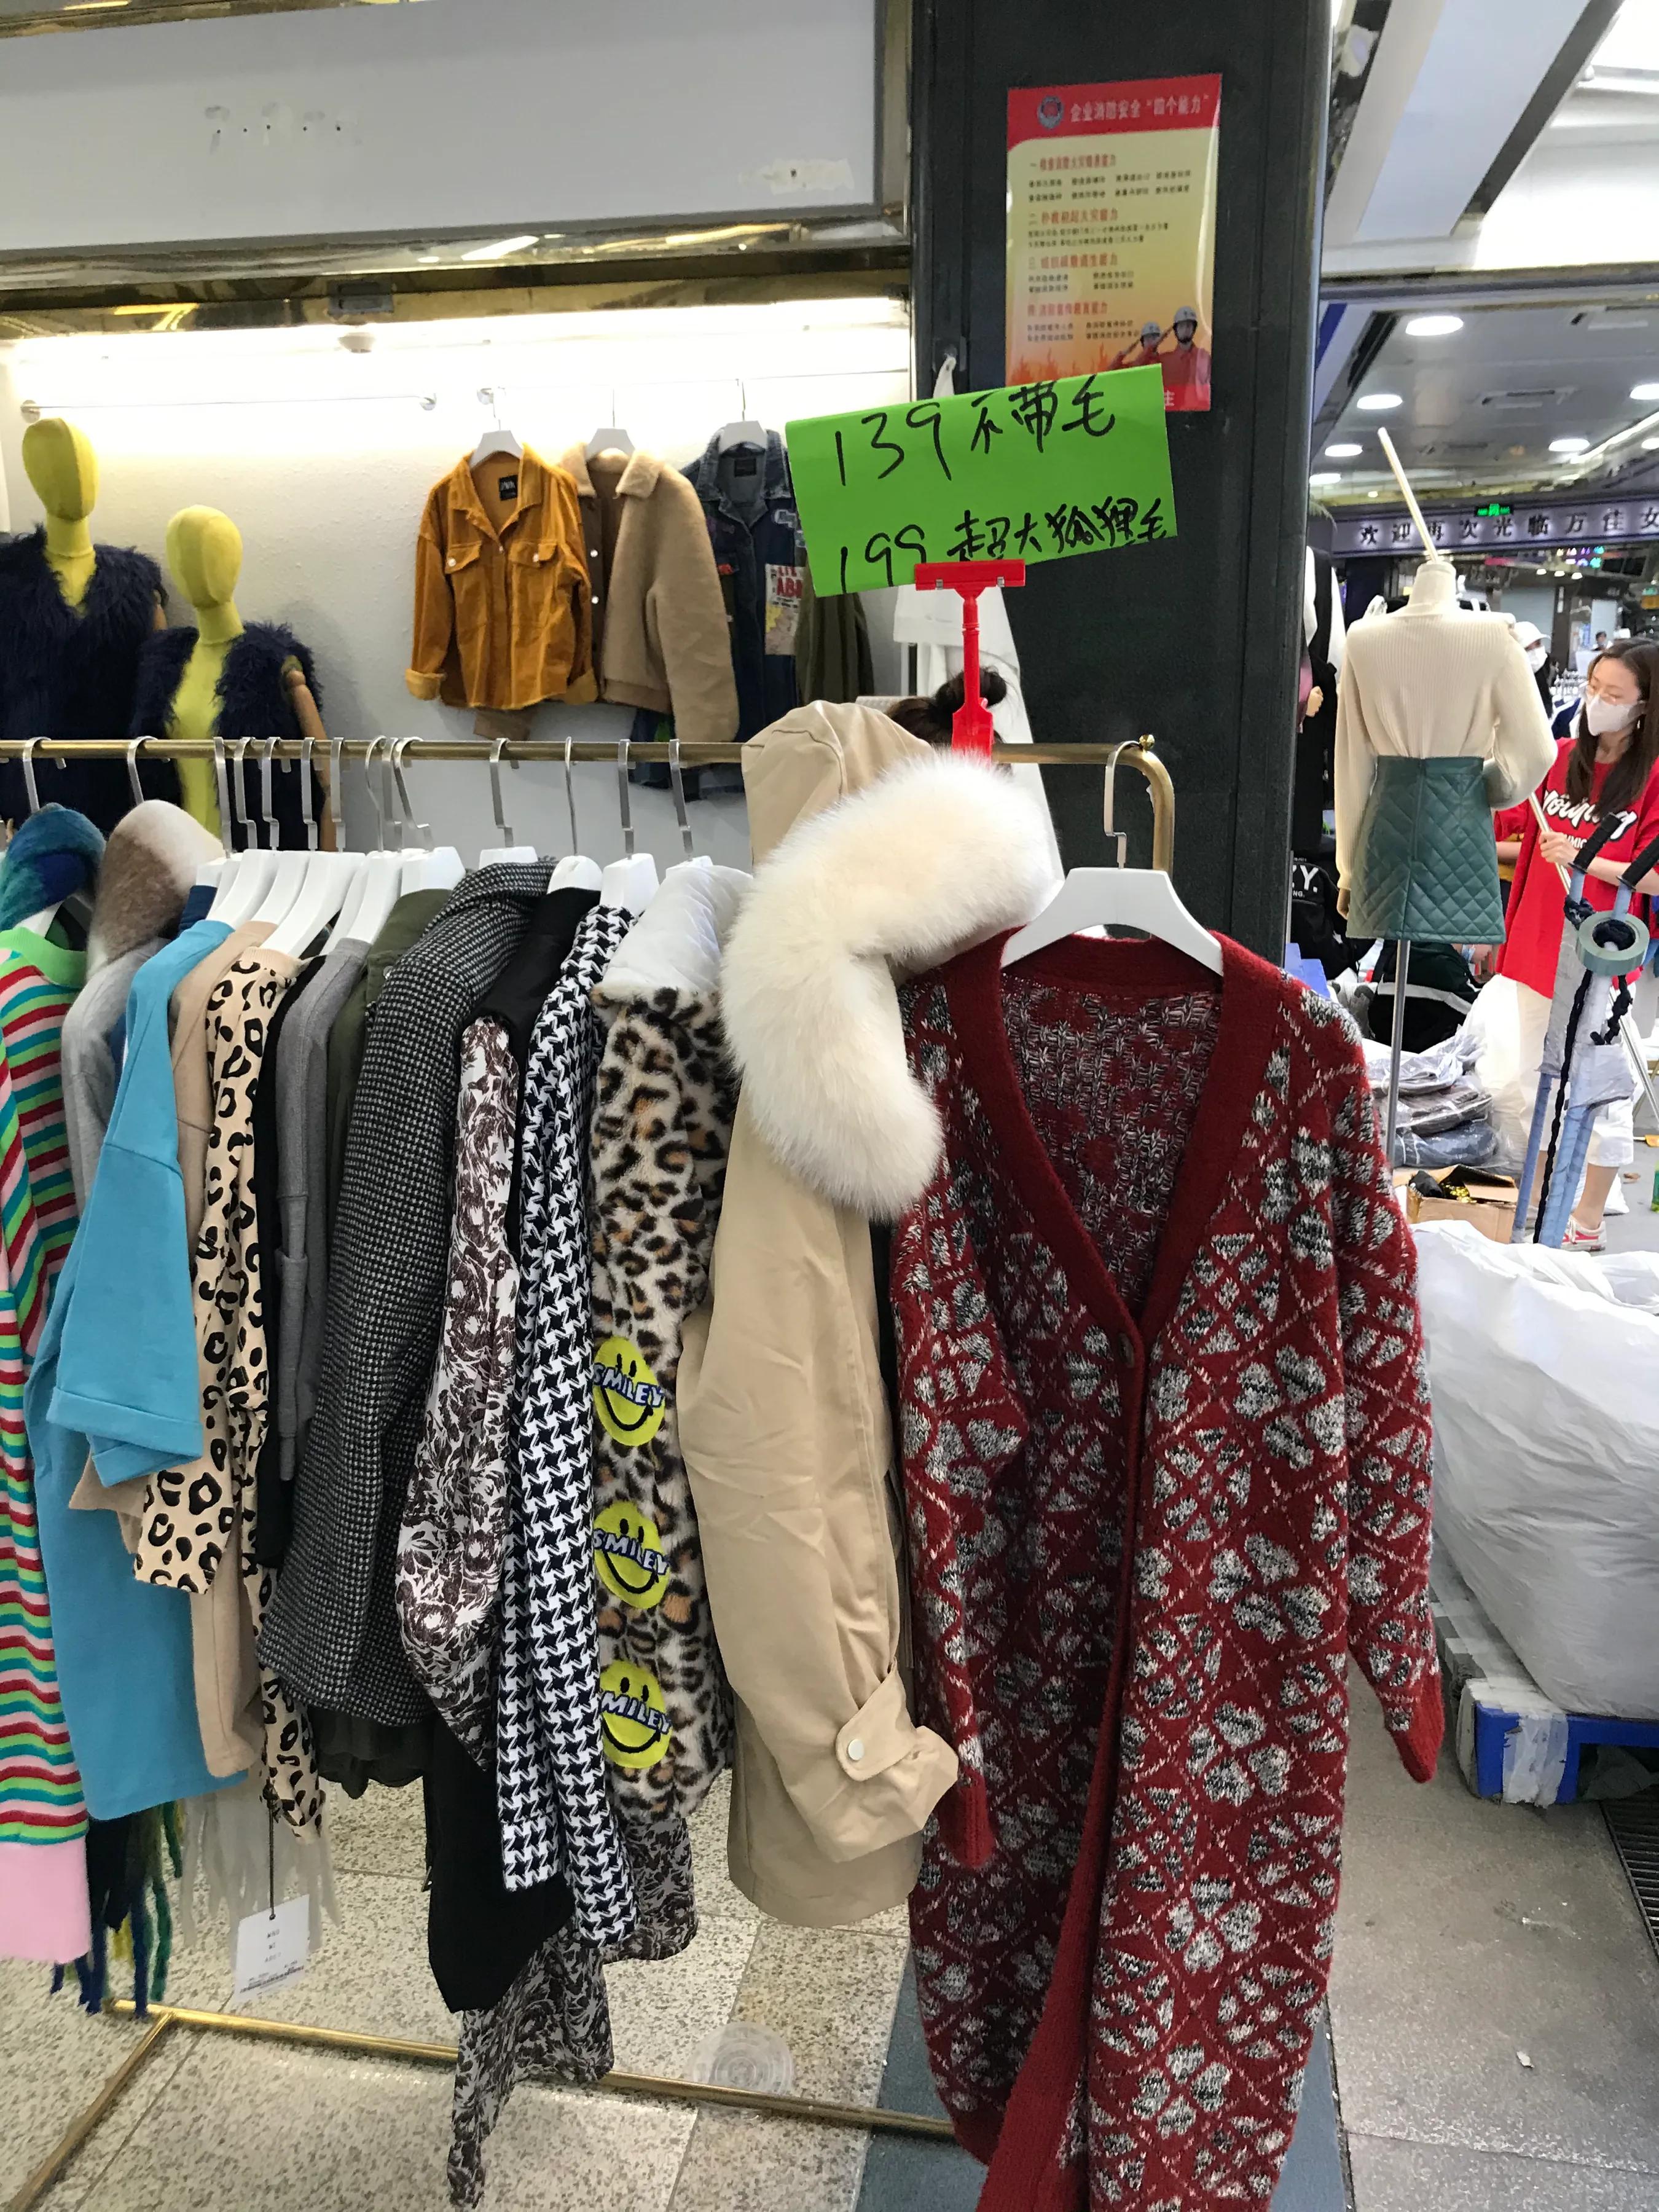 广州沙河顶服装批发市场最后两天清仓全场很多款式10元